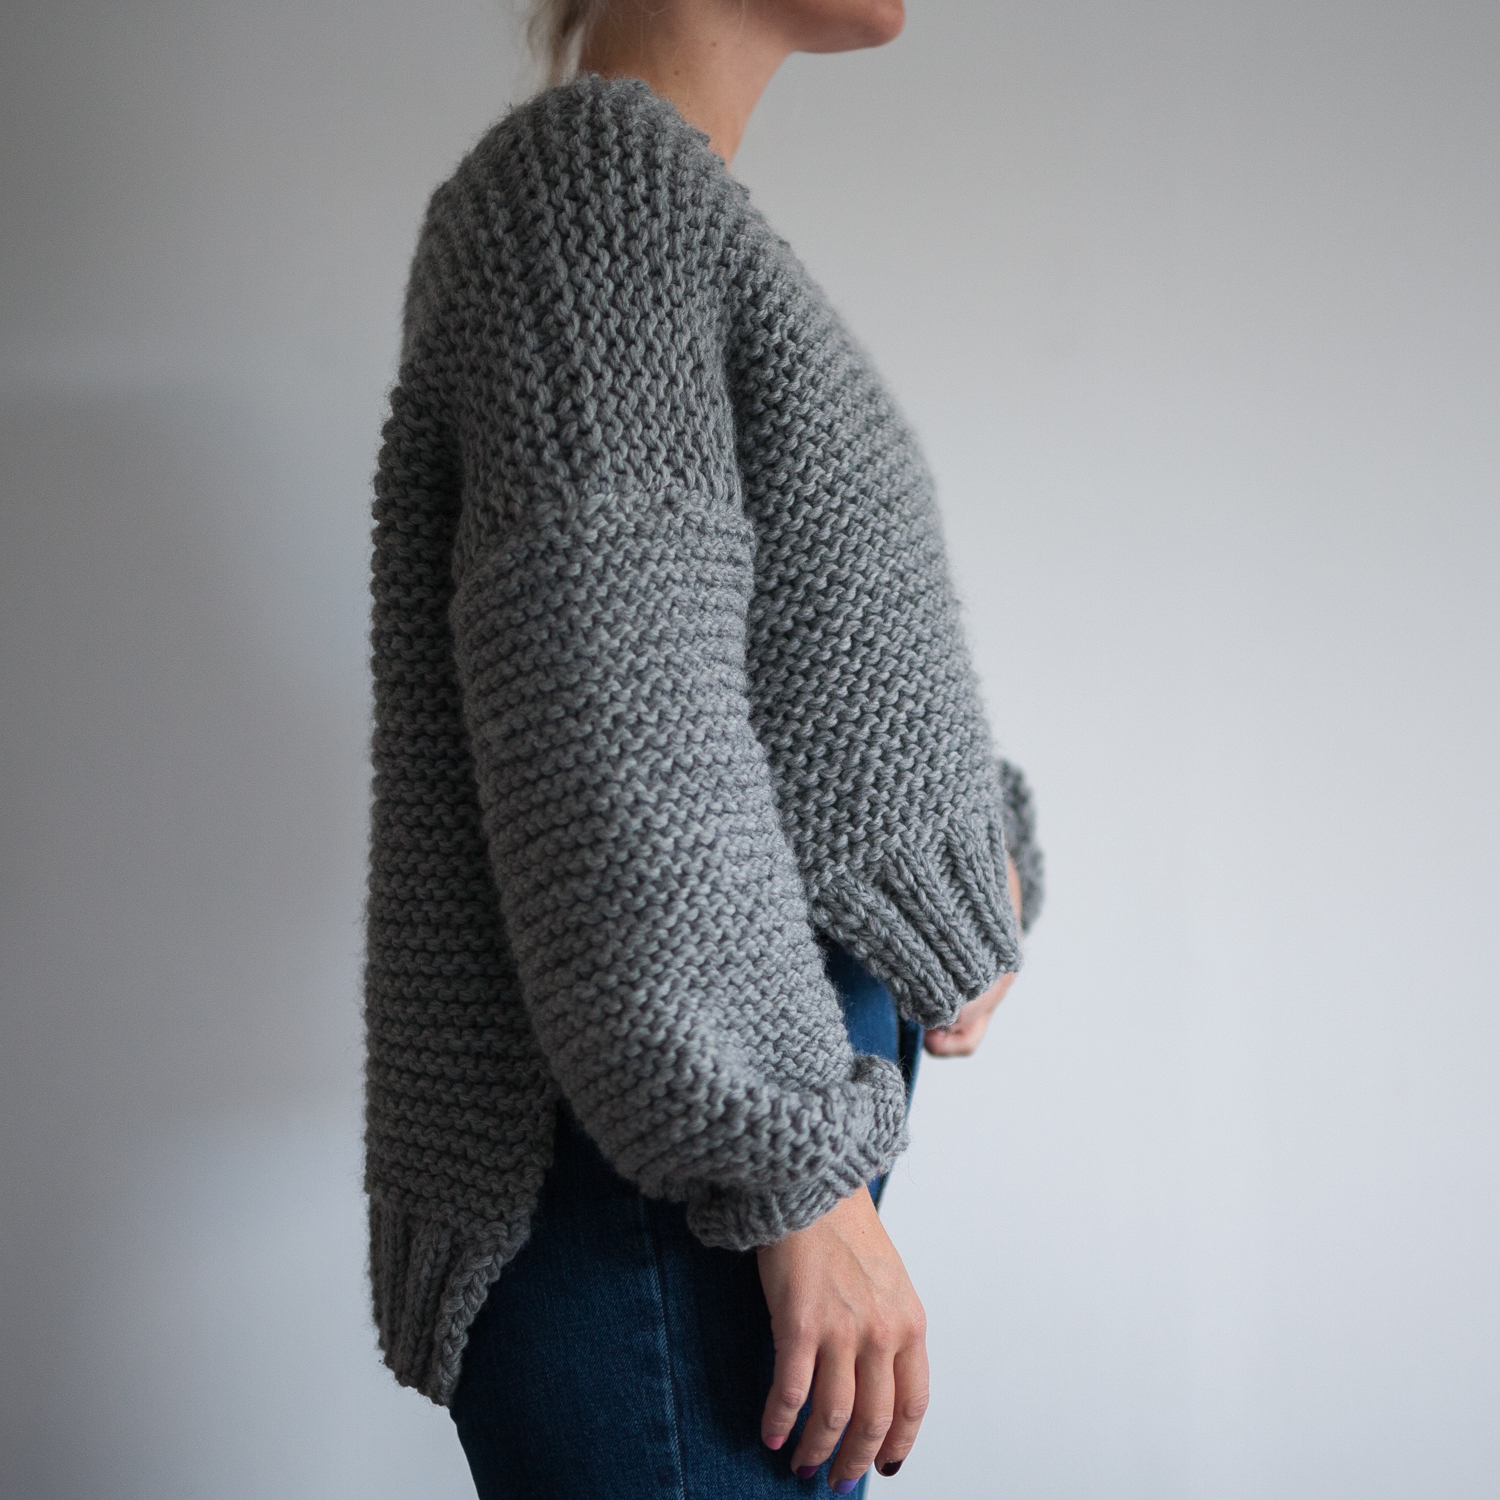 fast knitted sweater women knitting pattern